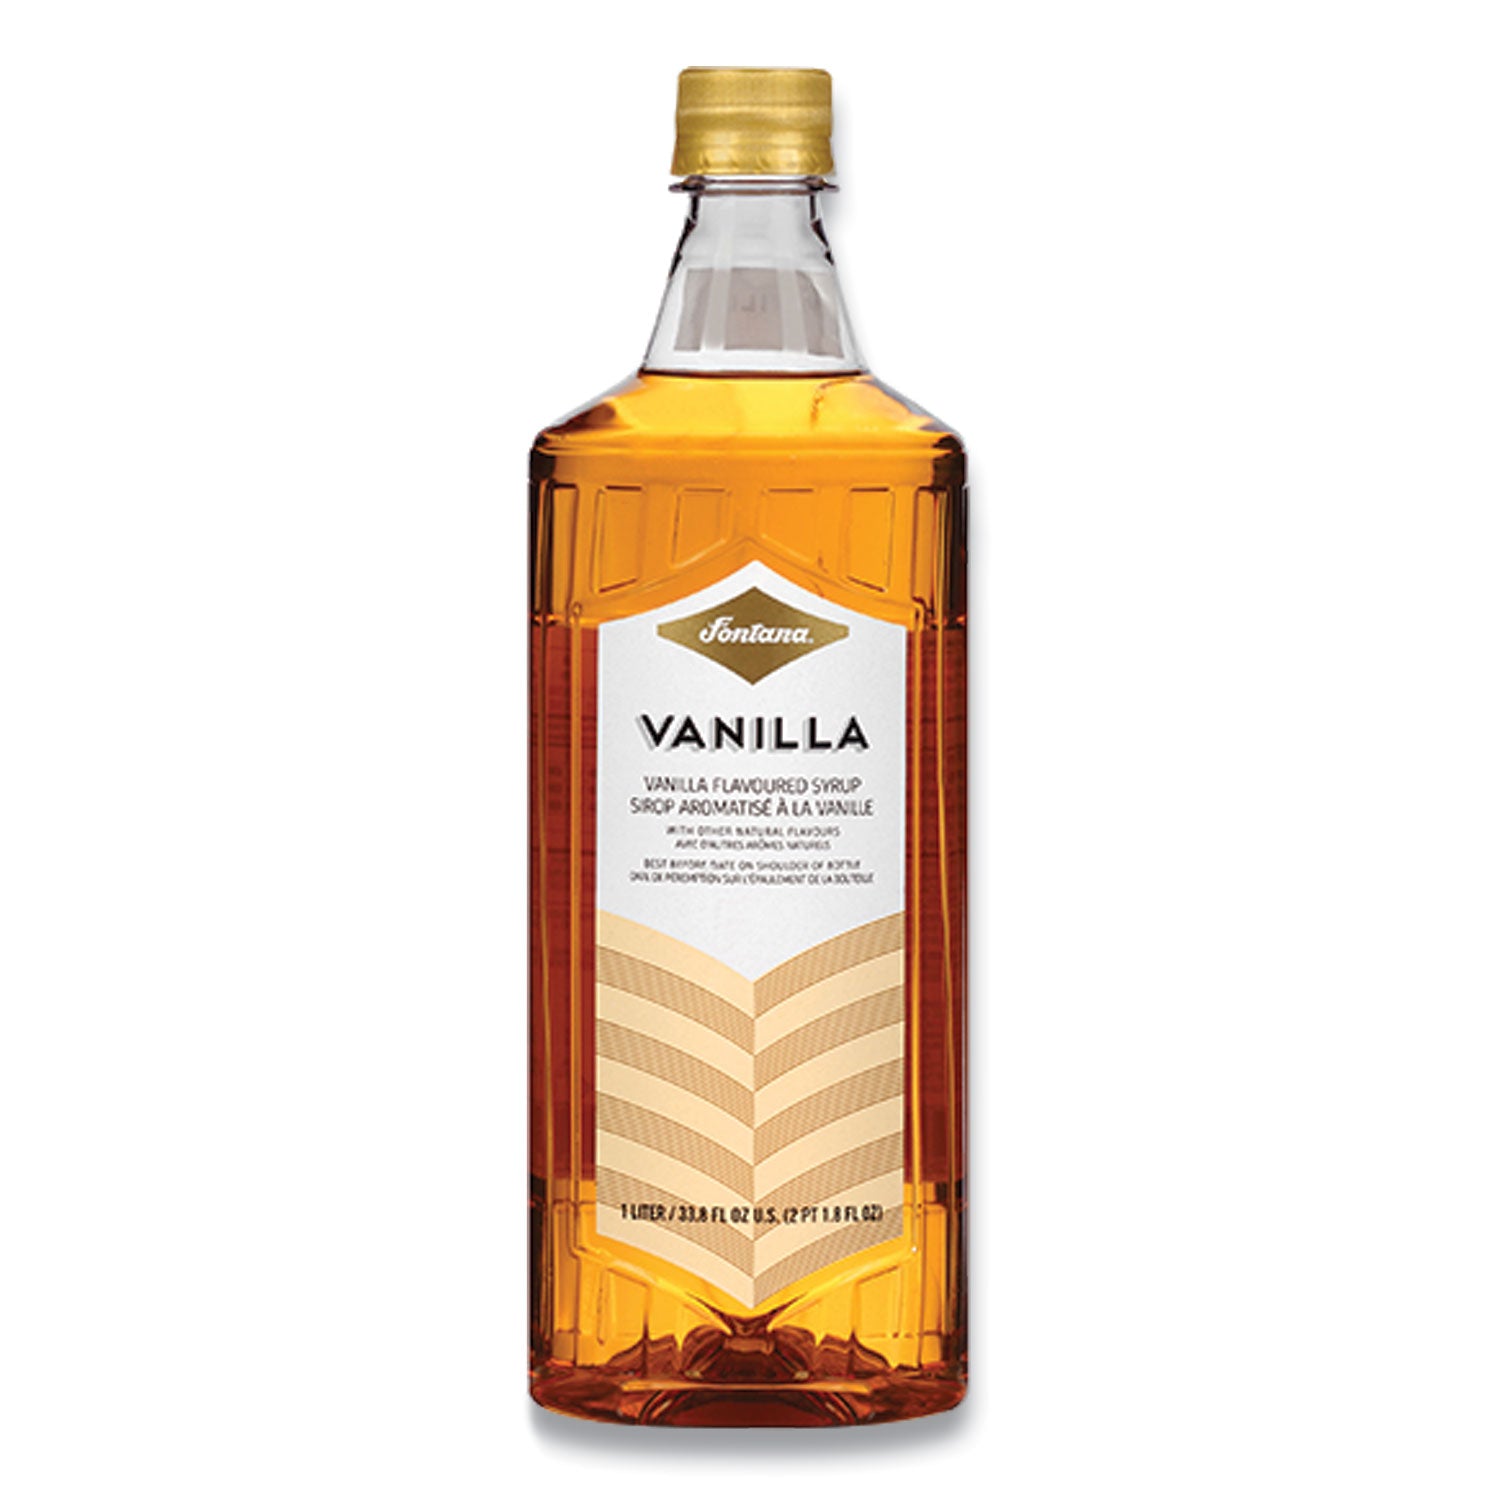 flavored-coffee-syrup-vanilla-1-liter_sbk412737675 - 1